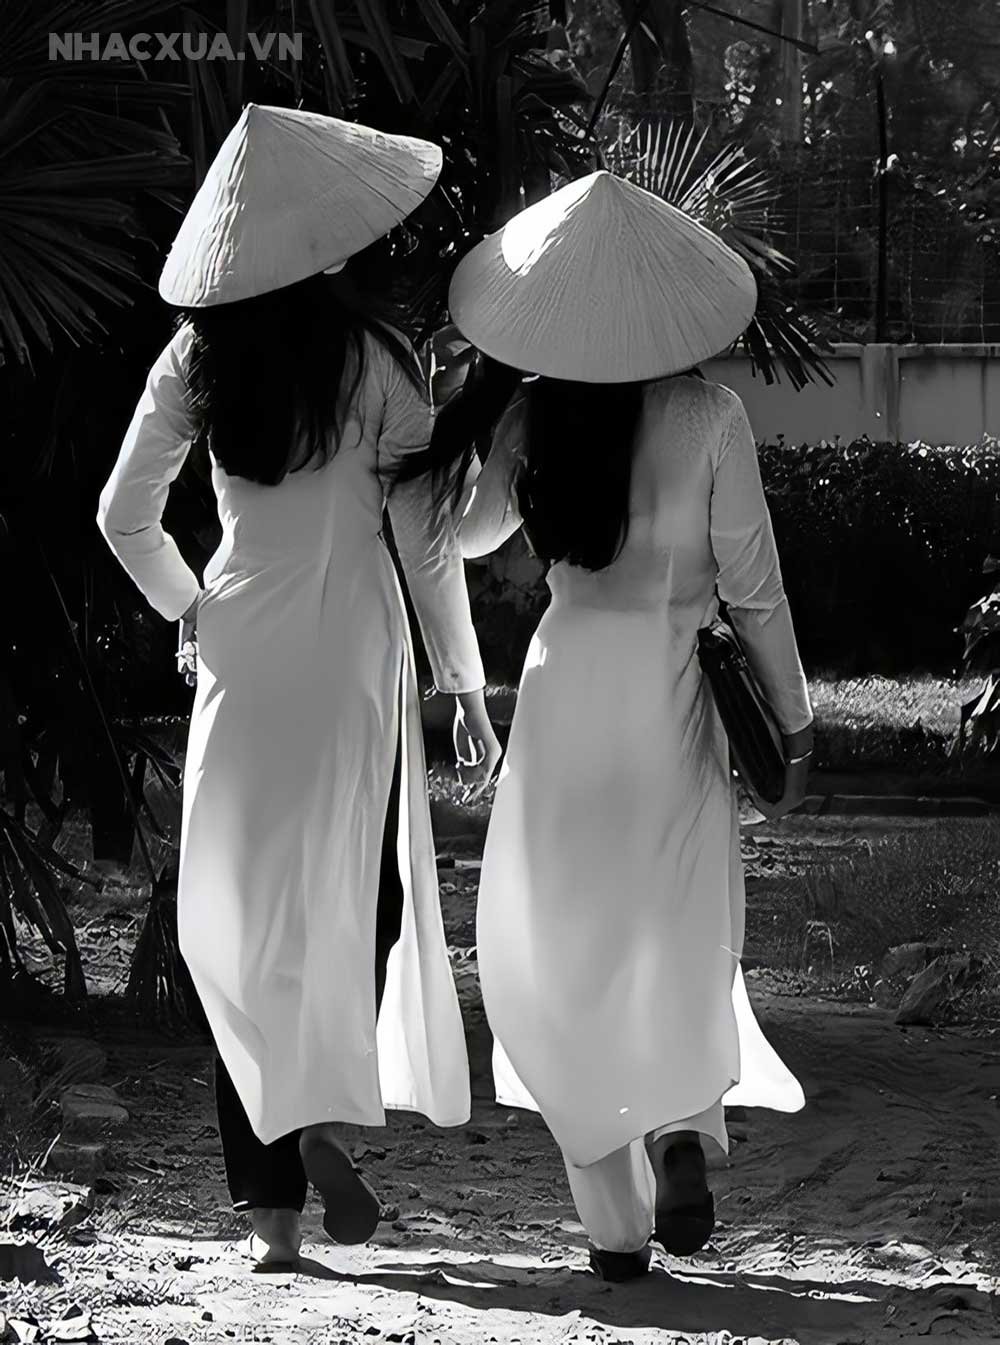 Tà áo dài: Tà áo dài mang đầy phong cách truyền thống Việt Nam, tạo nên vẻ đẹp thanh lịch và quý phái cho phụ nữ. Hãy cùng ngắm nhìn chi tiết tà áo dài, từ những sọc ren tinh tế đến những đường nét chạy dọc thân áo, để tìm hiểu thêm về vẻ đẹp tinh tế của chiếc áo dài.